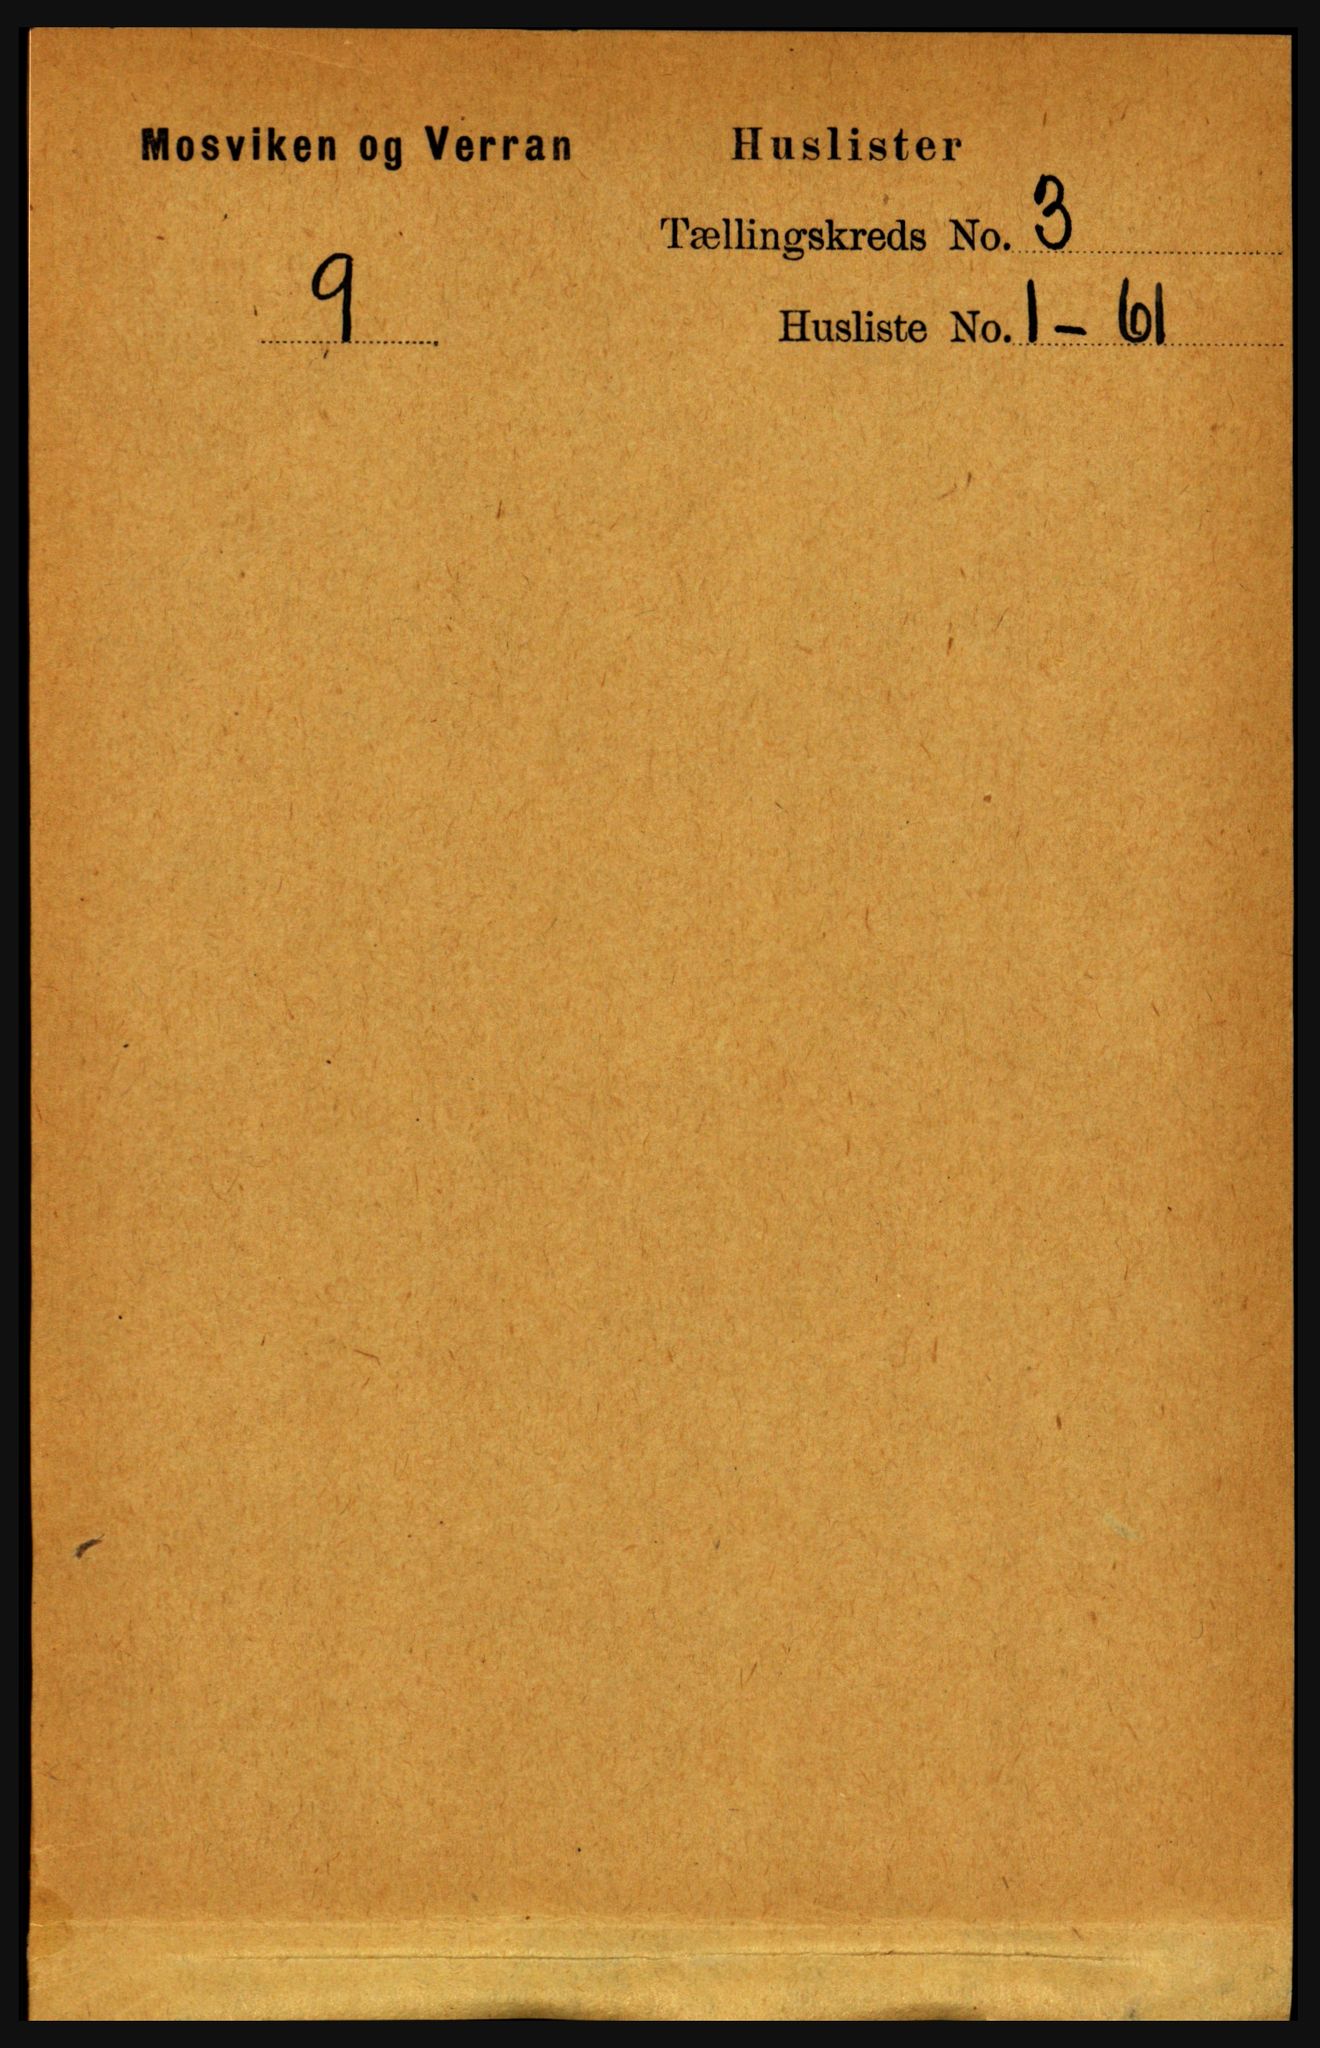 RA, Folketelling 1891 for 1723 Mosvik og Verran herred, 1891, s. 872